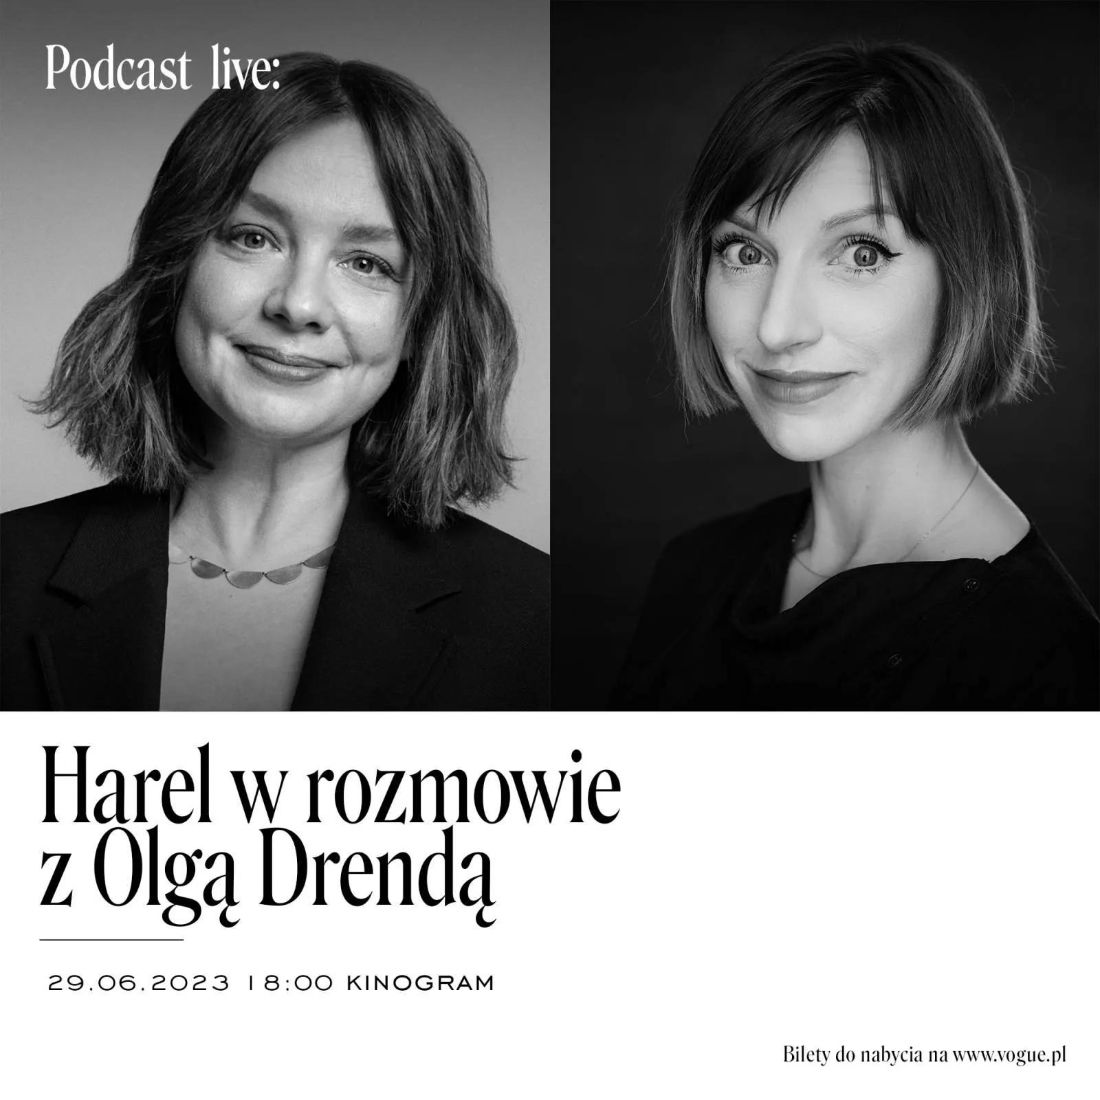 „Wehikuł Harel” z Olgą Drendą – podcast na żywo w kinie KinoGram